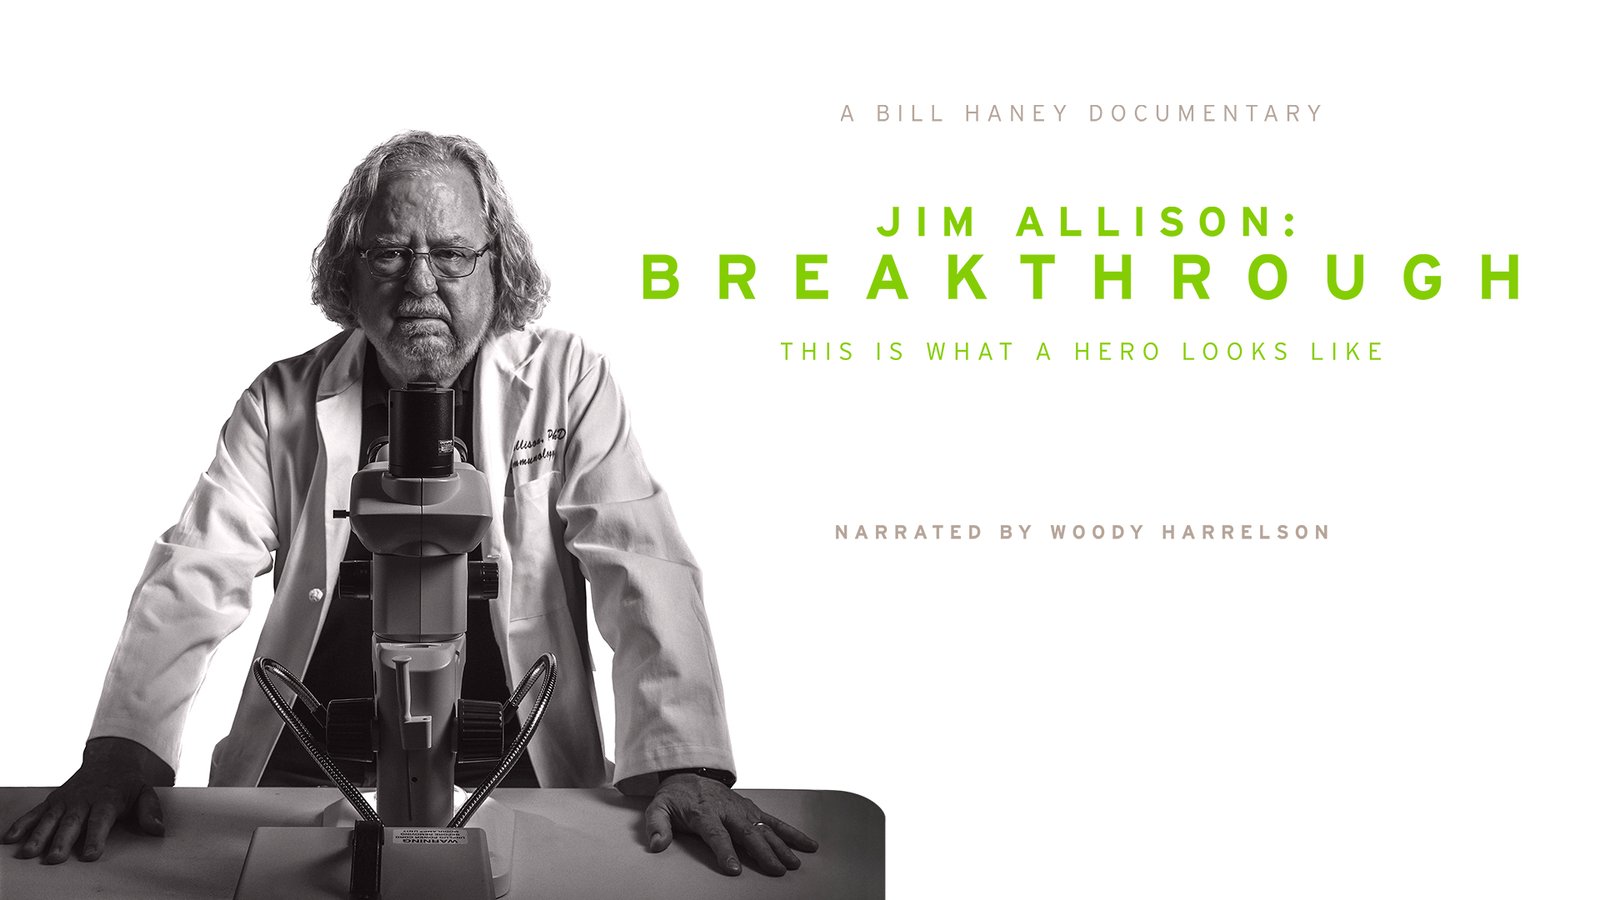 Jim Allison: Breakthrough